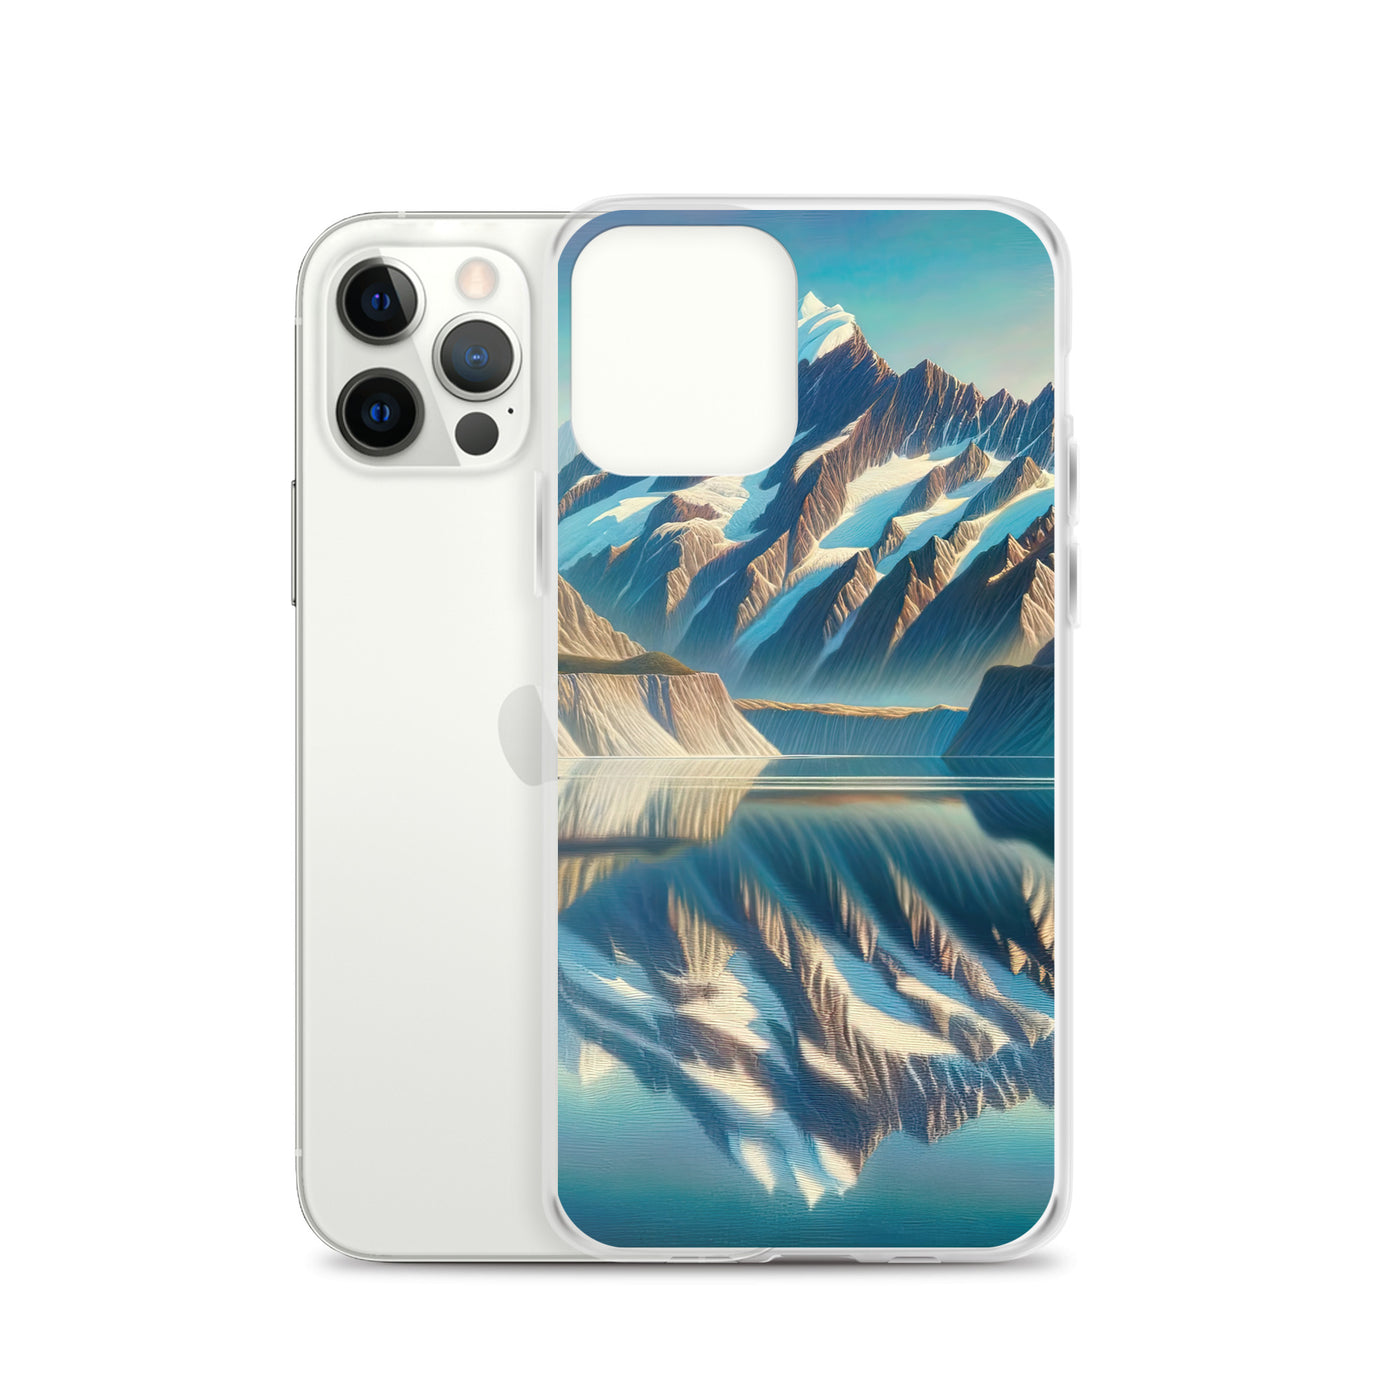 Ölgemälde eines unberührten Sees, der die Bergkette spiegelt - iPhone Schutzhülle (durchsichtig) berge xxx yyy zzz